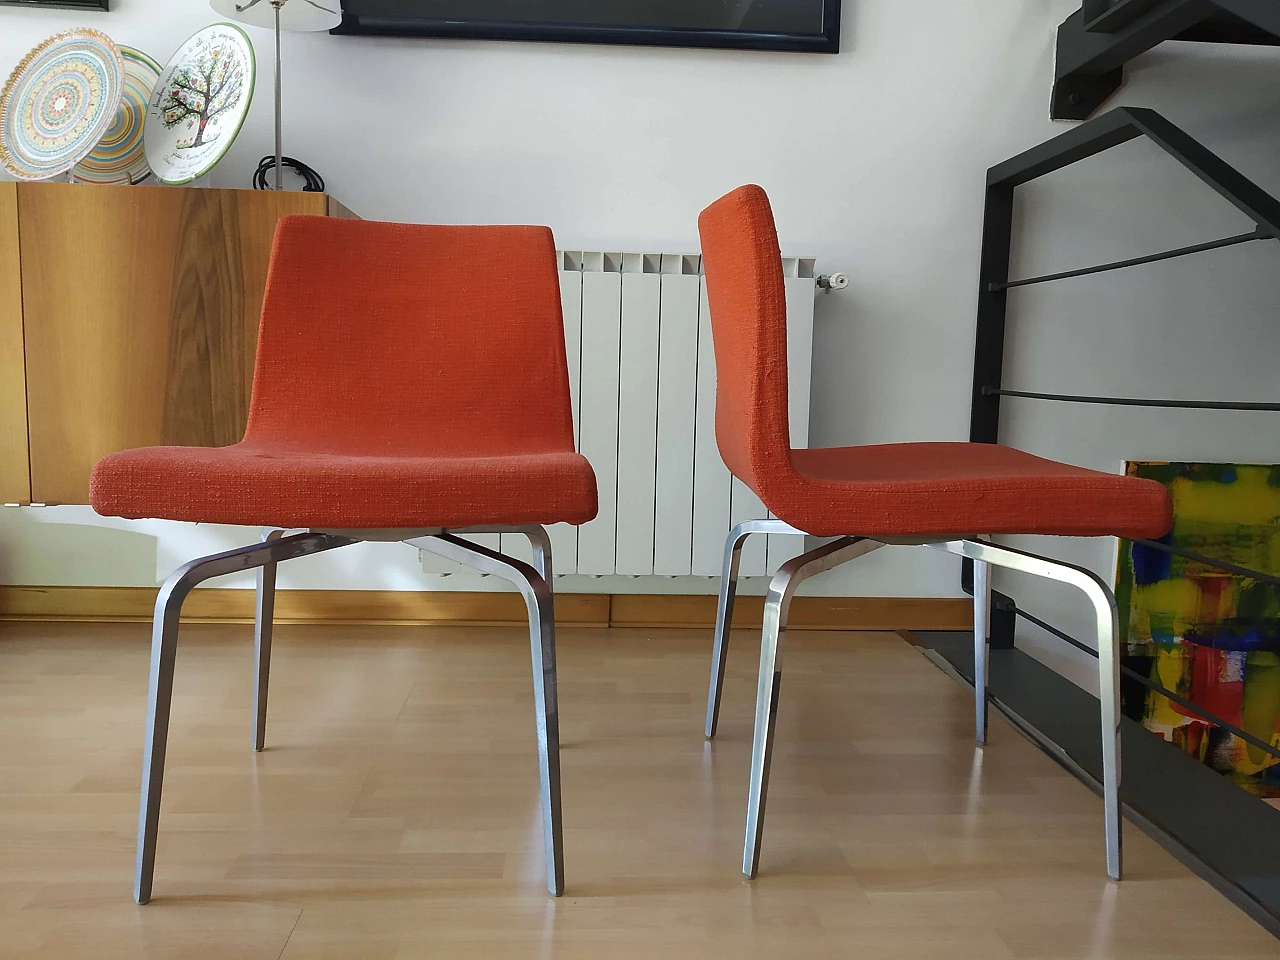 4 Hella Chairs by Mauro Lipparini for MisuraEmme 1477289